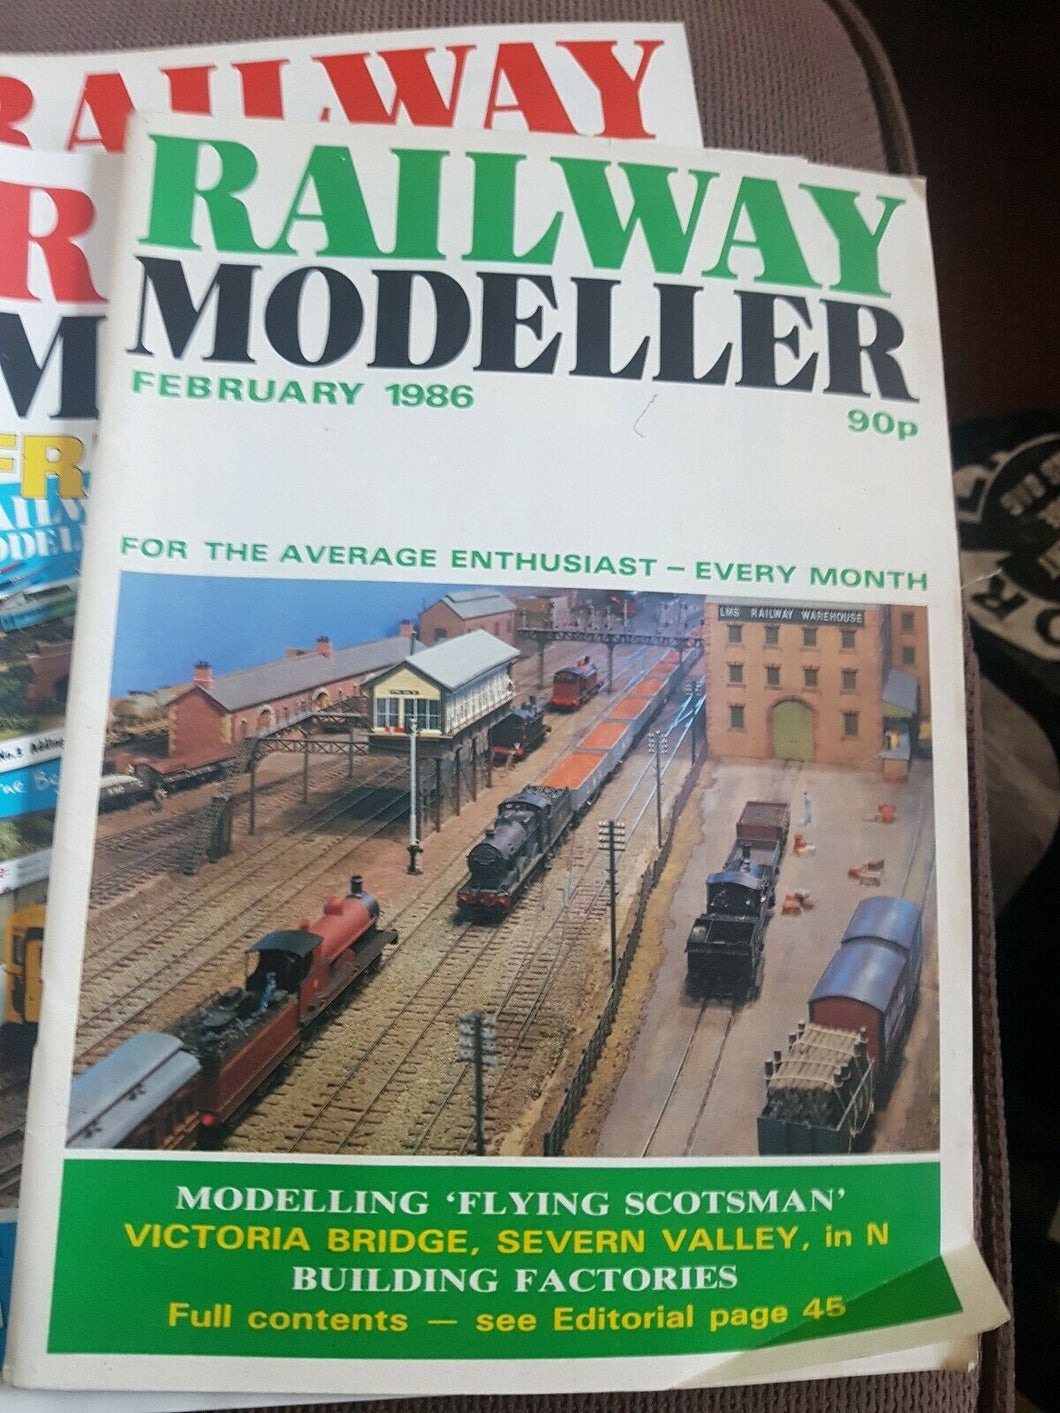 Railway modeller magazine February 1986